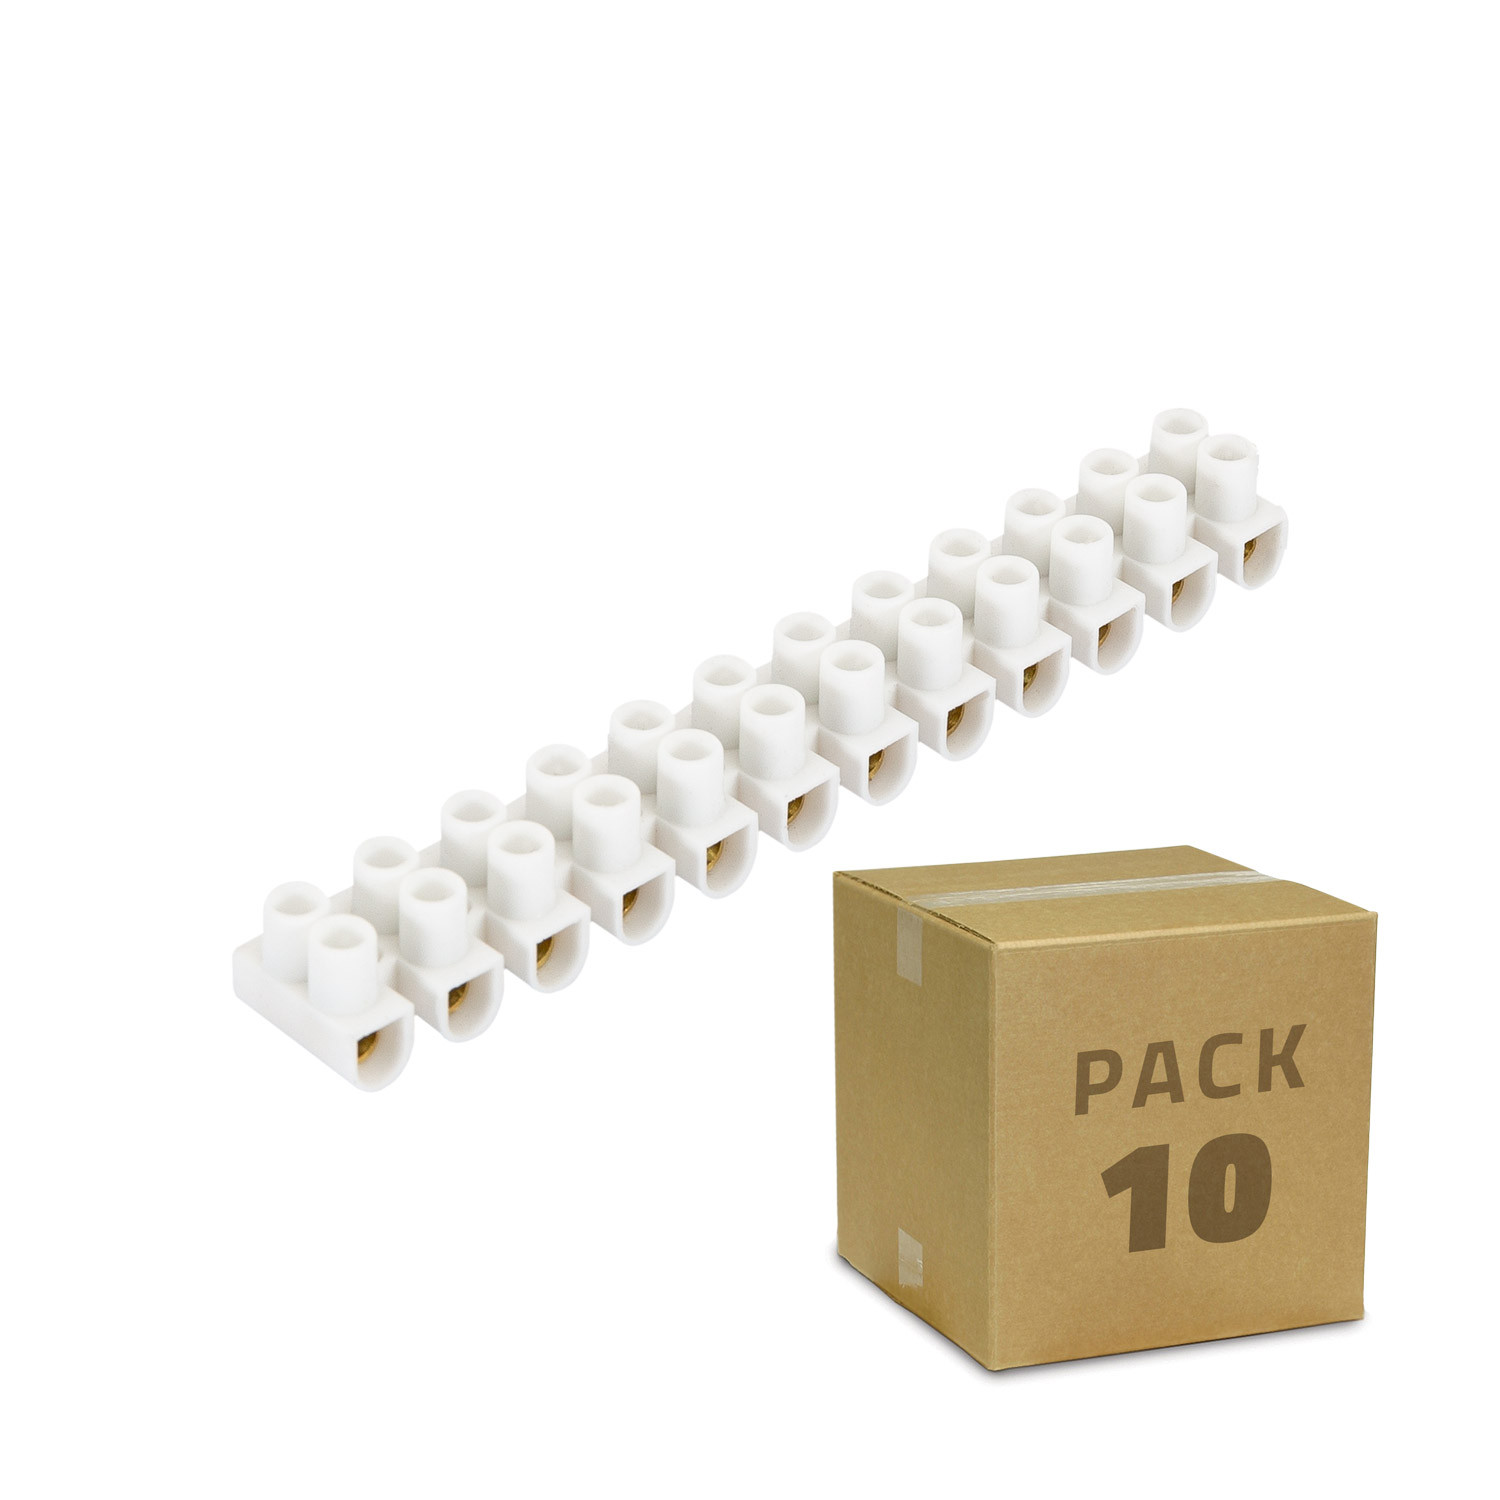 Producto de Pack 10 unidades de Clema Regleta de 12 Conectores de Cable Eléctrico Blanco